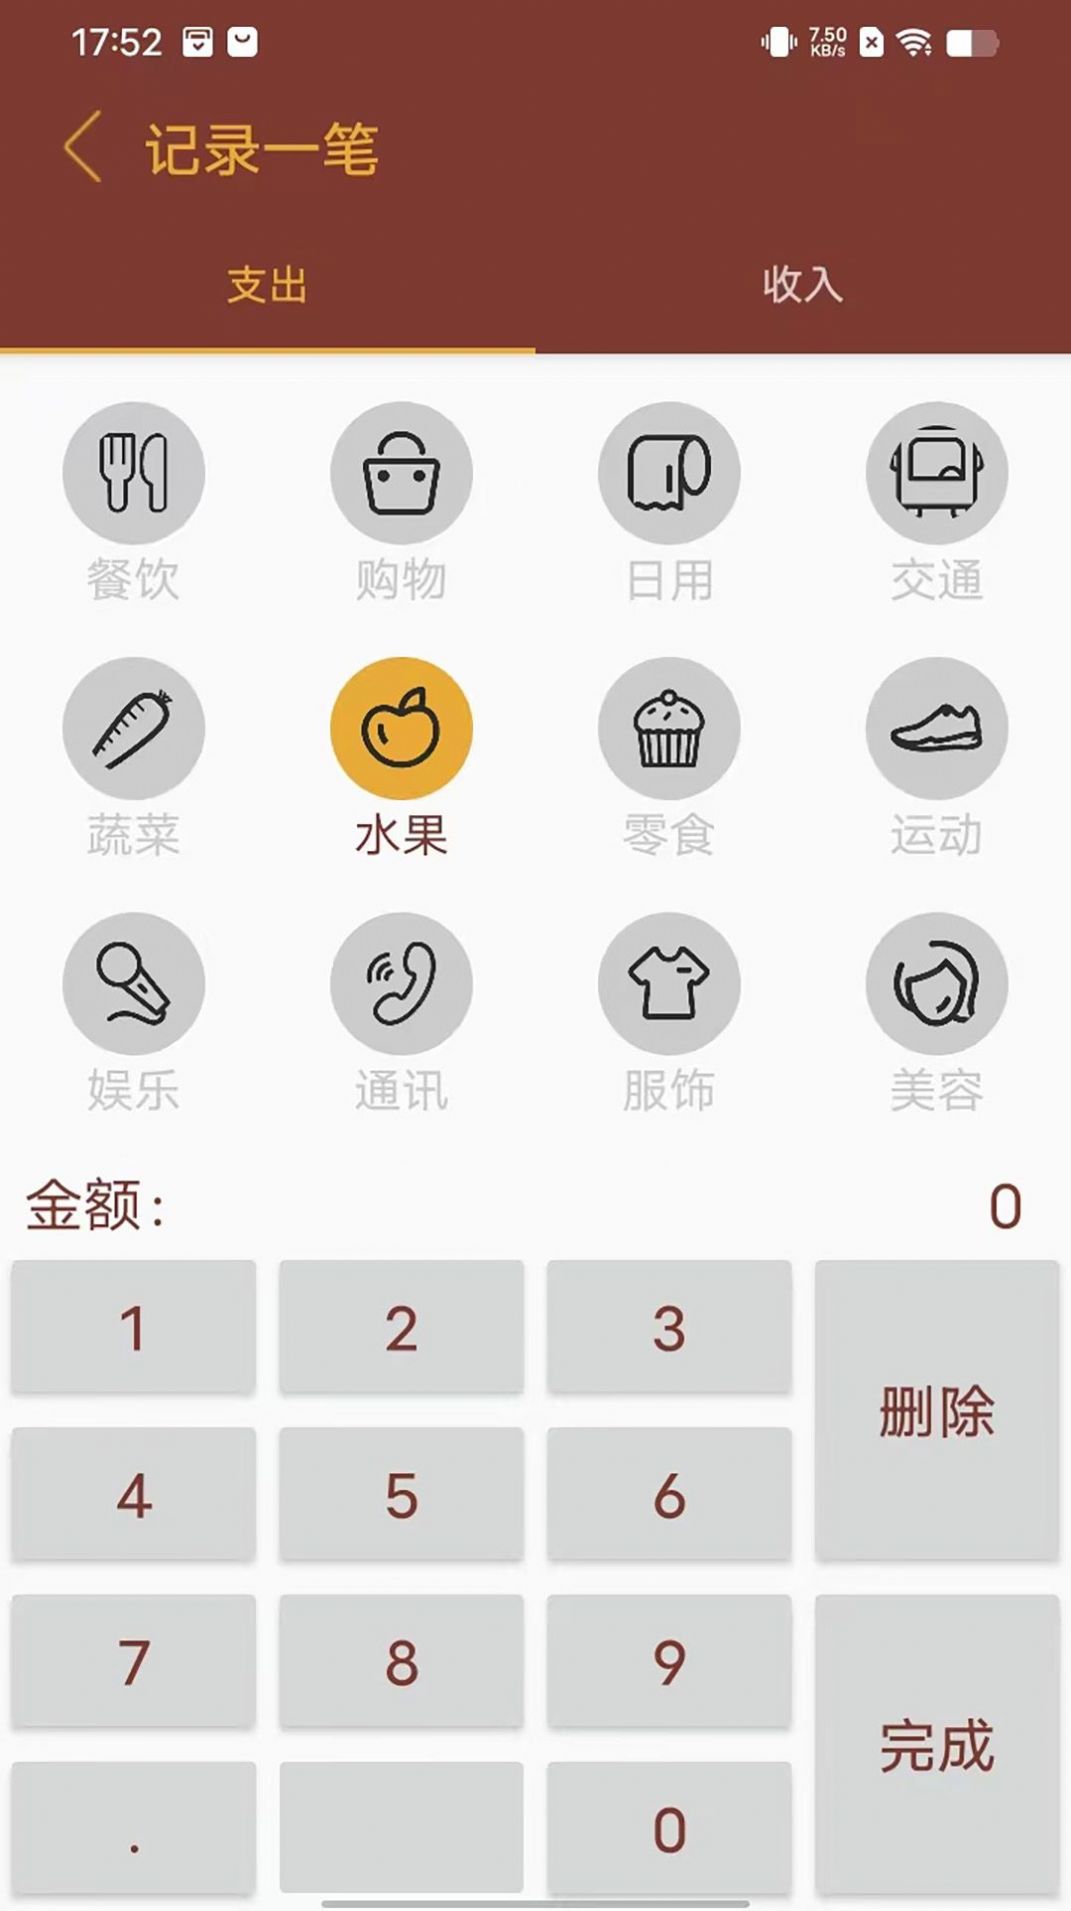 智者乐渔记账app下载,智者乐渔记账app安卓版 v1.0.0